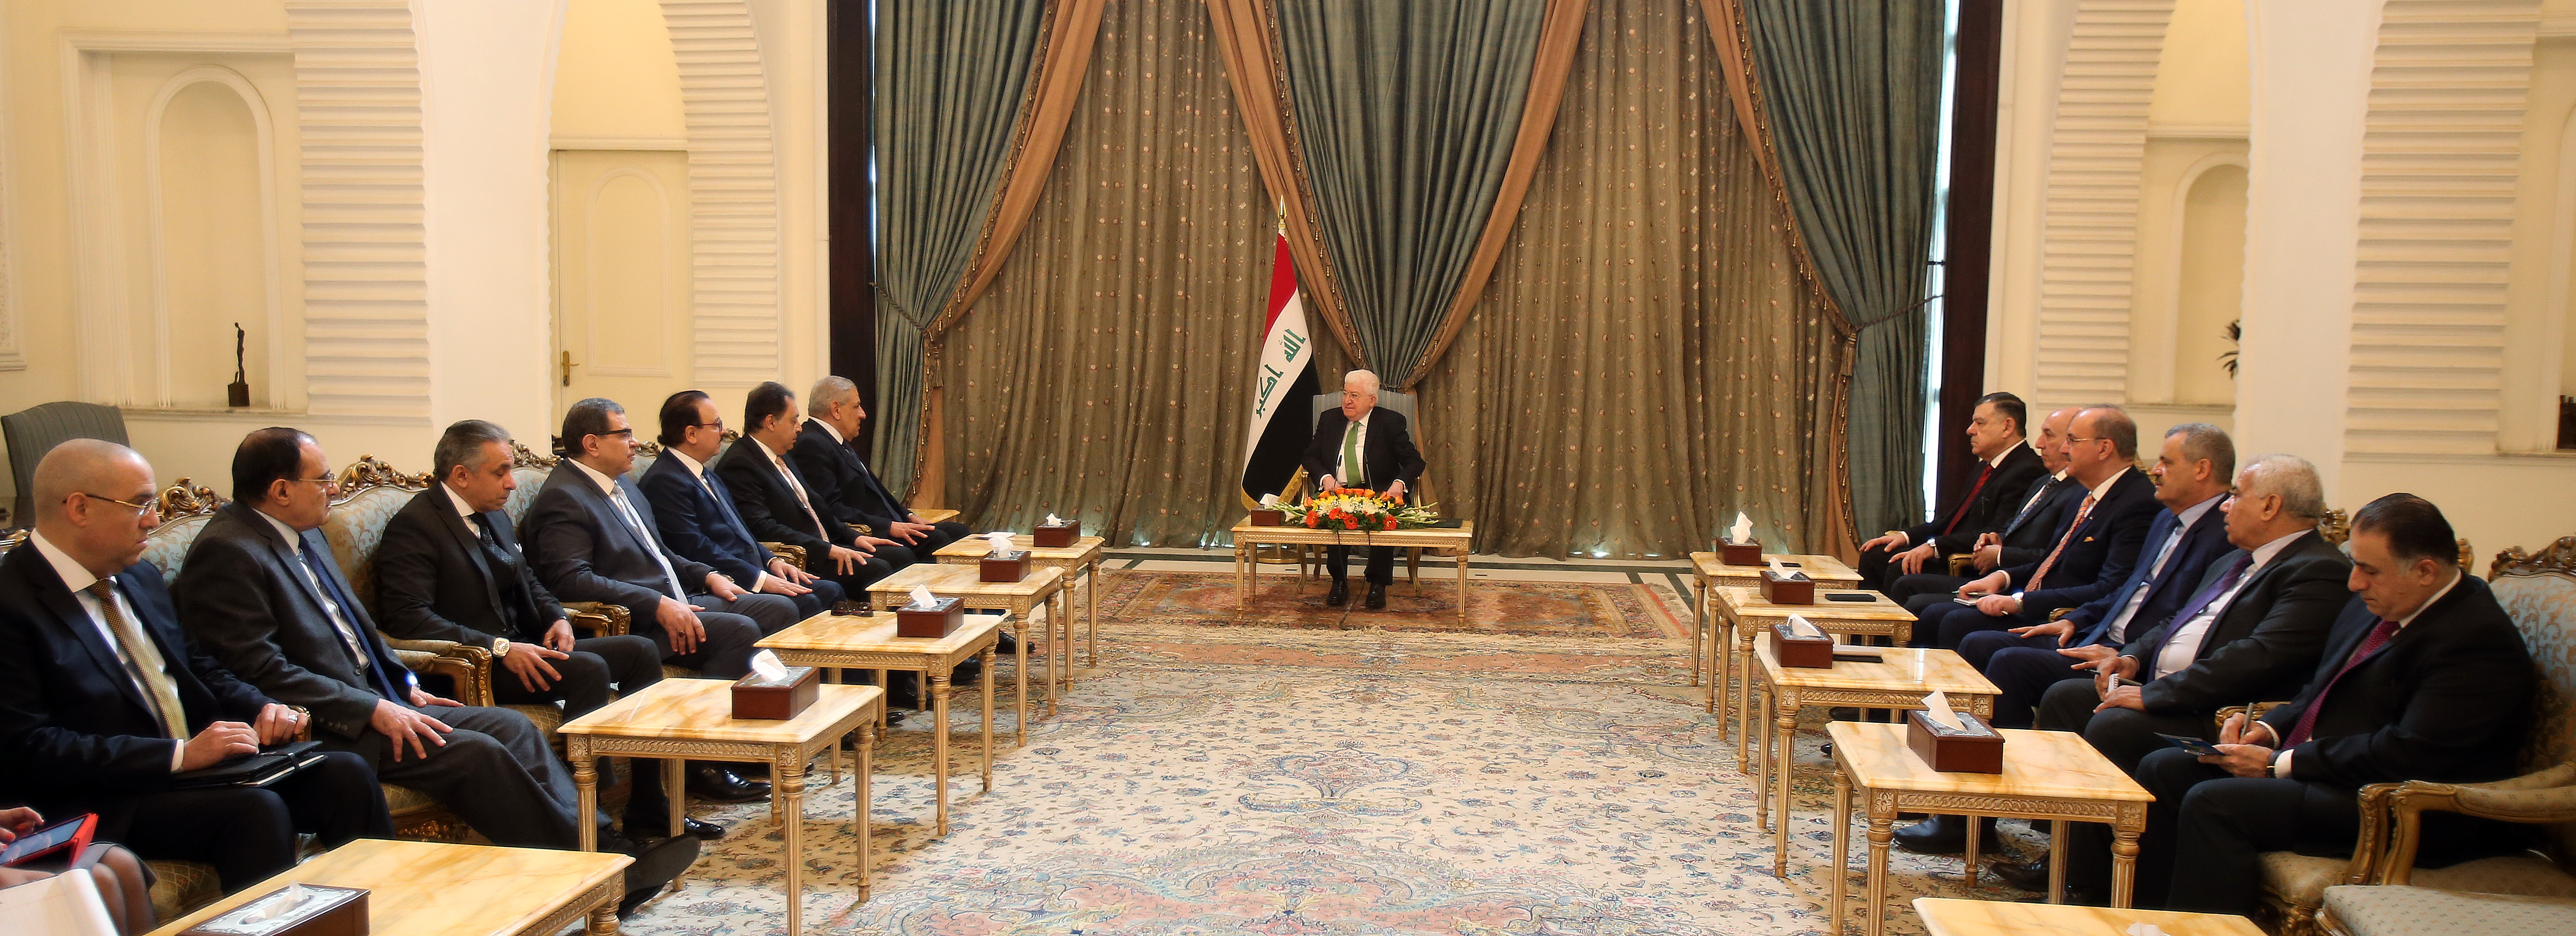 معصوم ومحلب يؤكدان على تعزيز العلاقات بين العراق ومصر